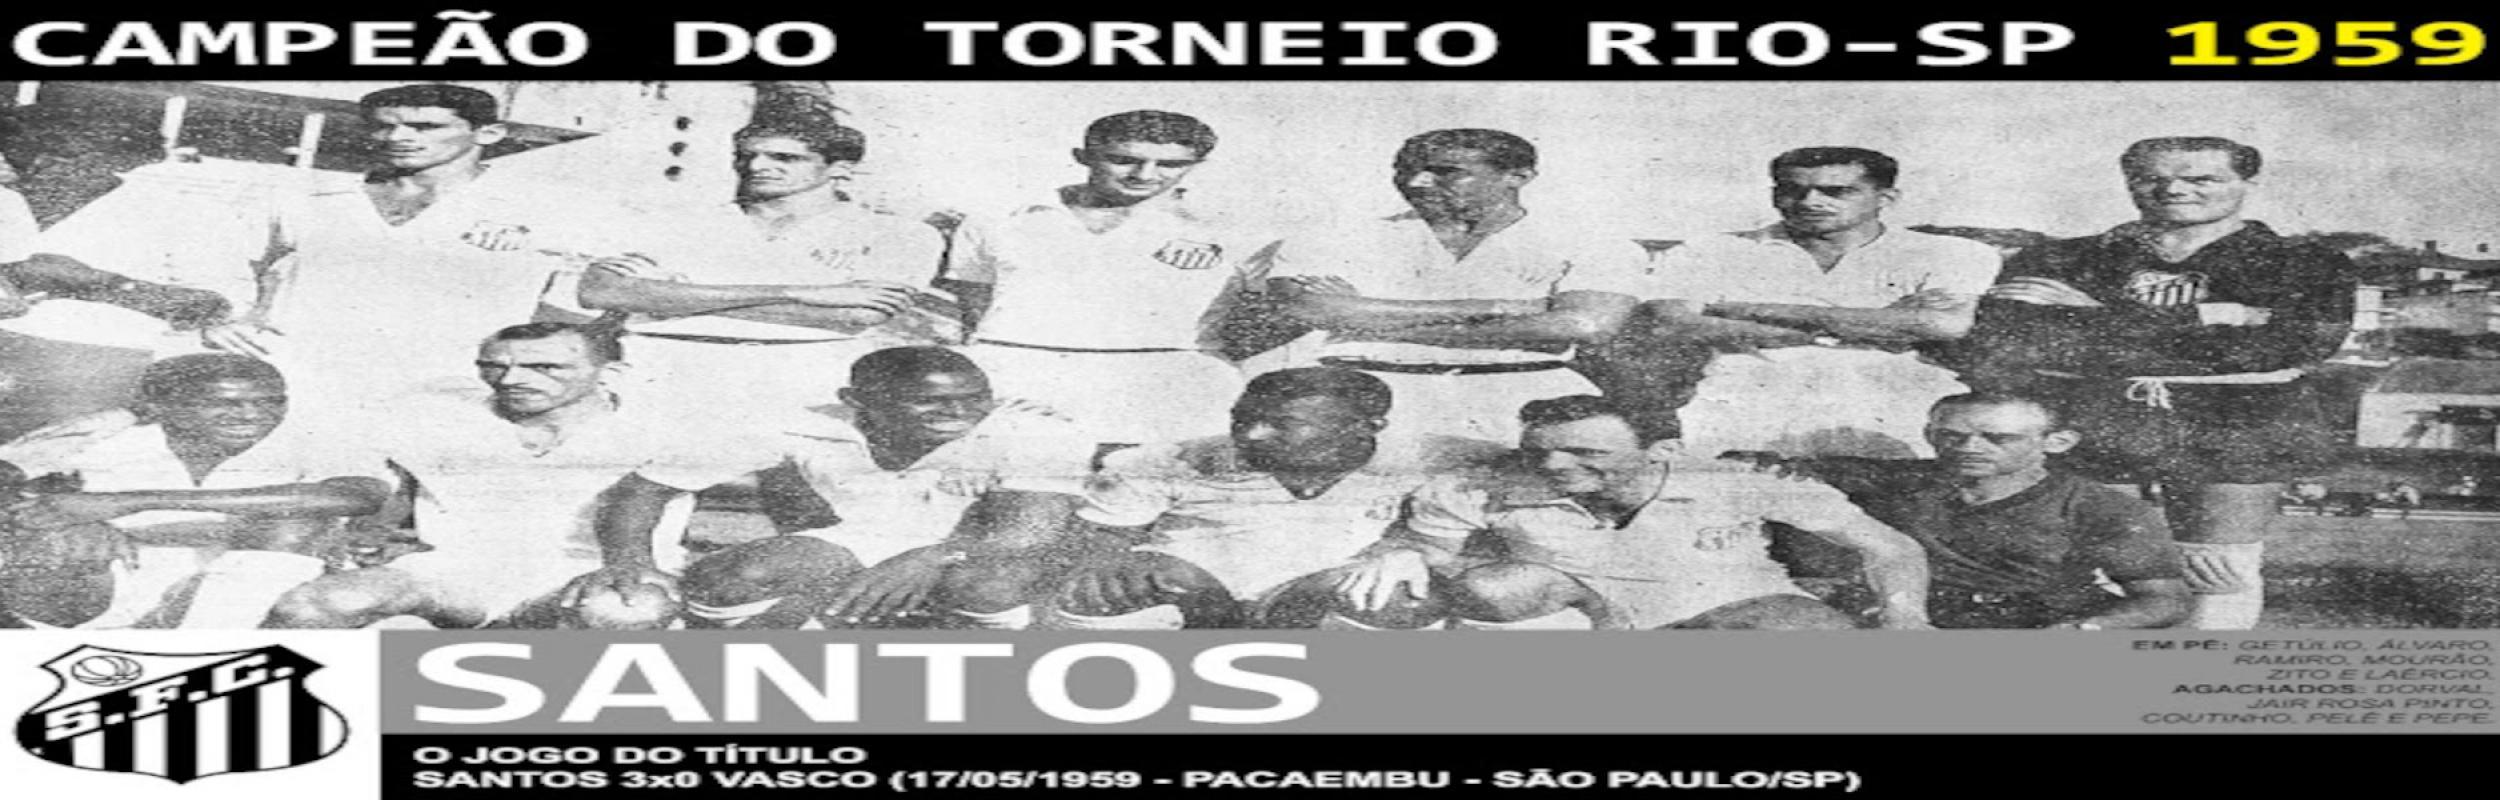 Torneio Rio-São Paulo 1959